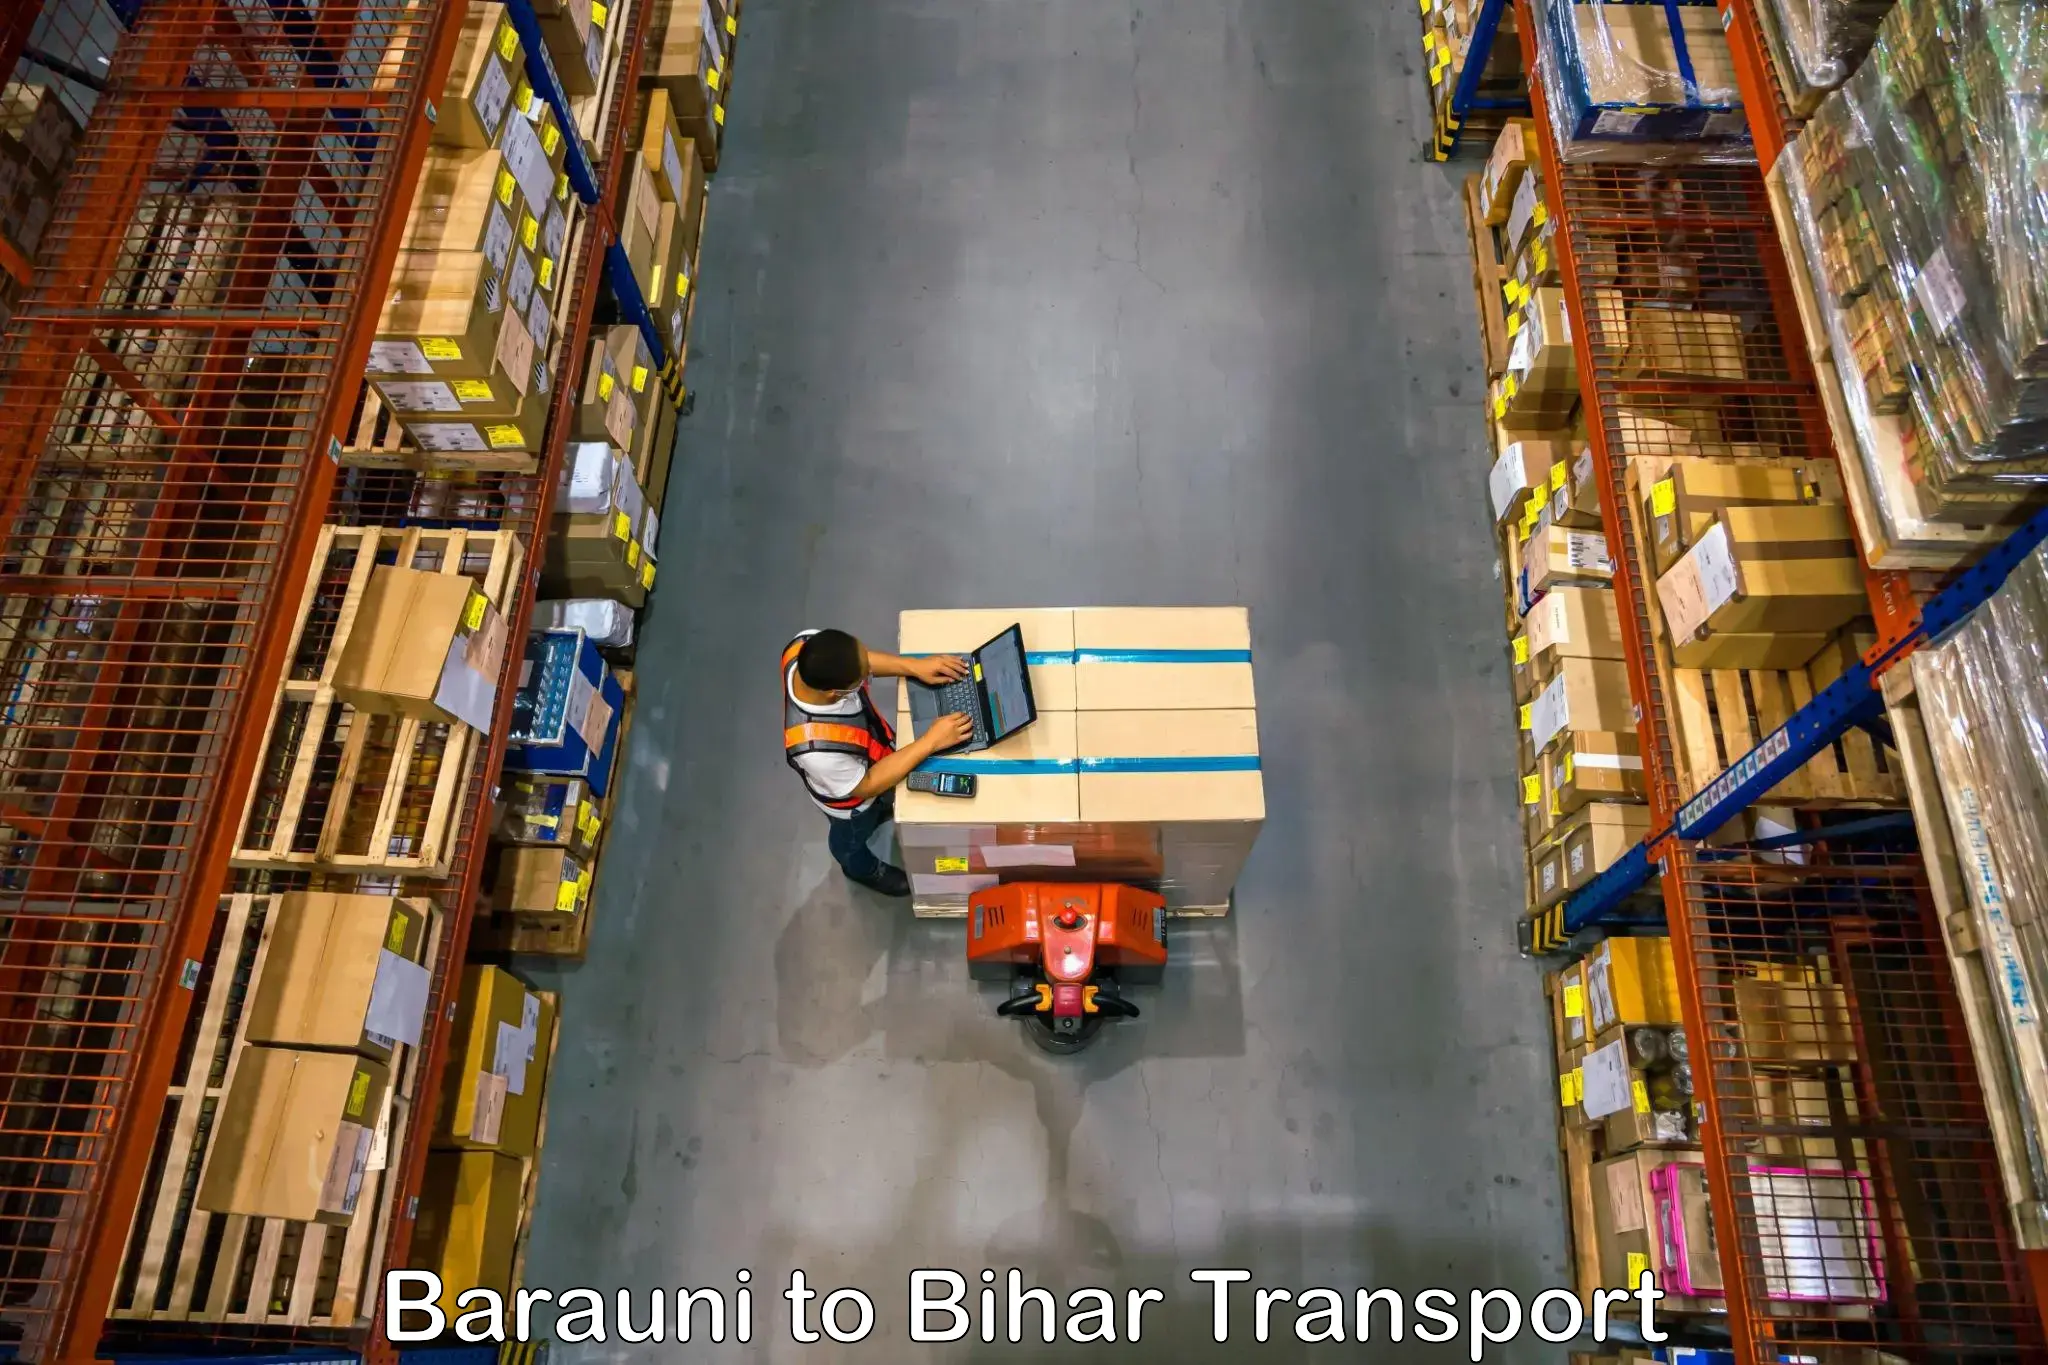 Shipping partner Barauni to Barauni